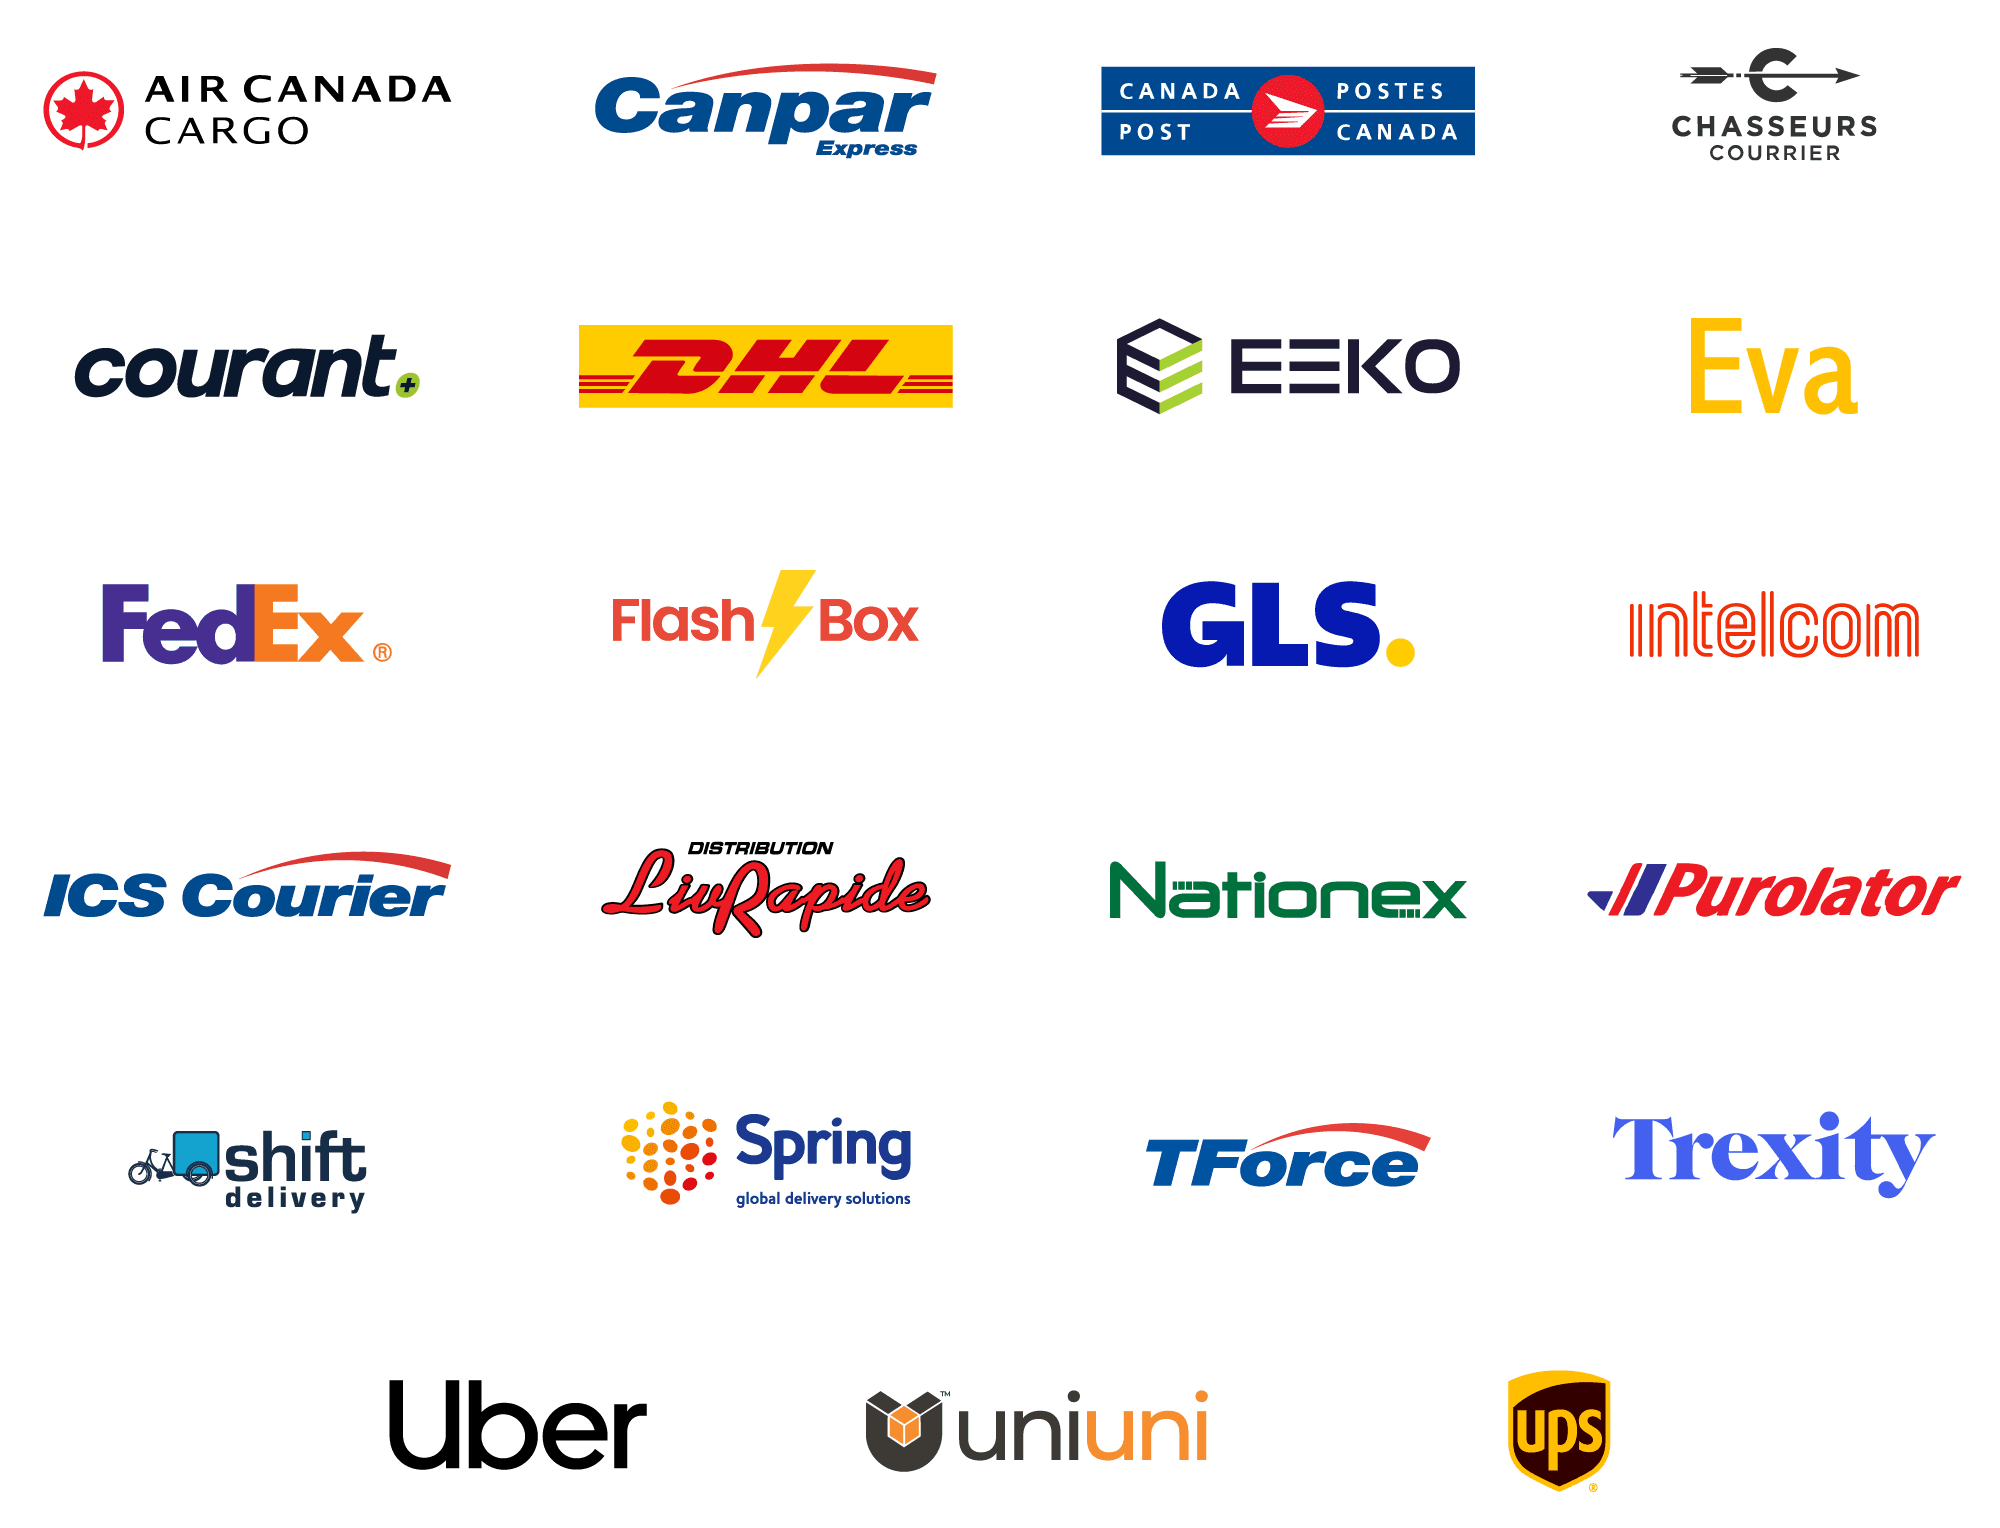 Courier logos